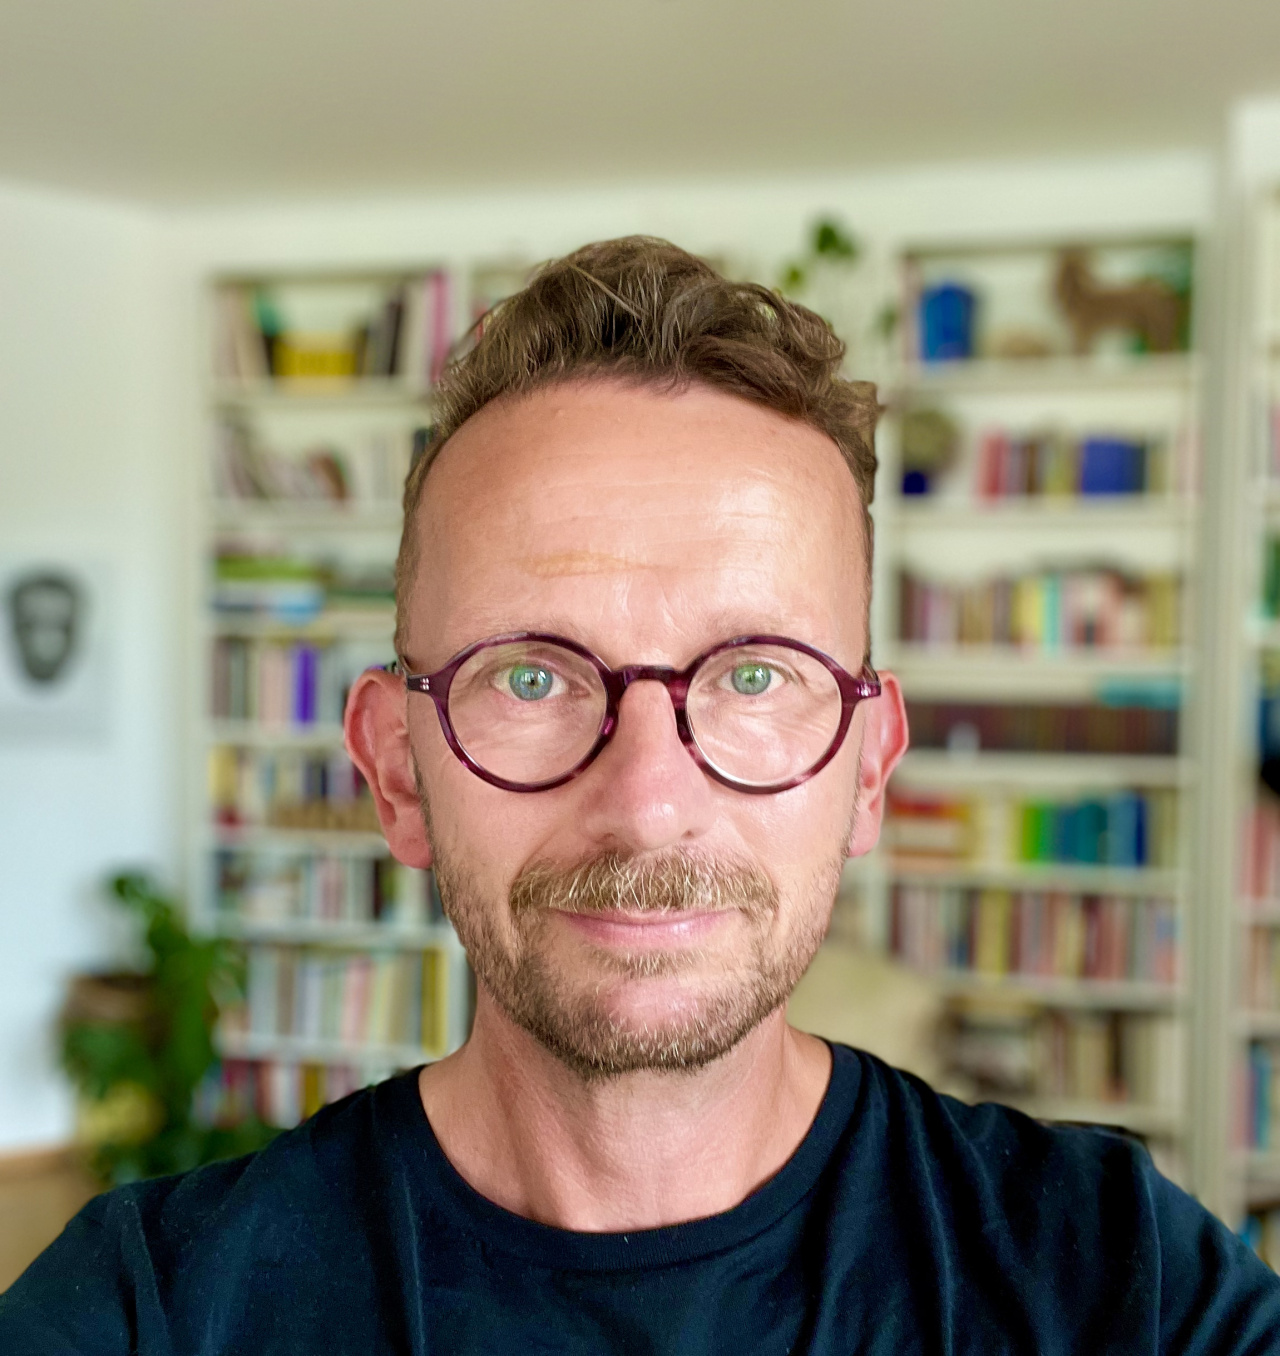 Portrait eines Manns mit runder Brille vor einem Bücherregal.